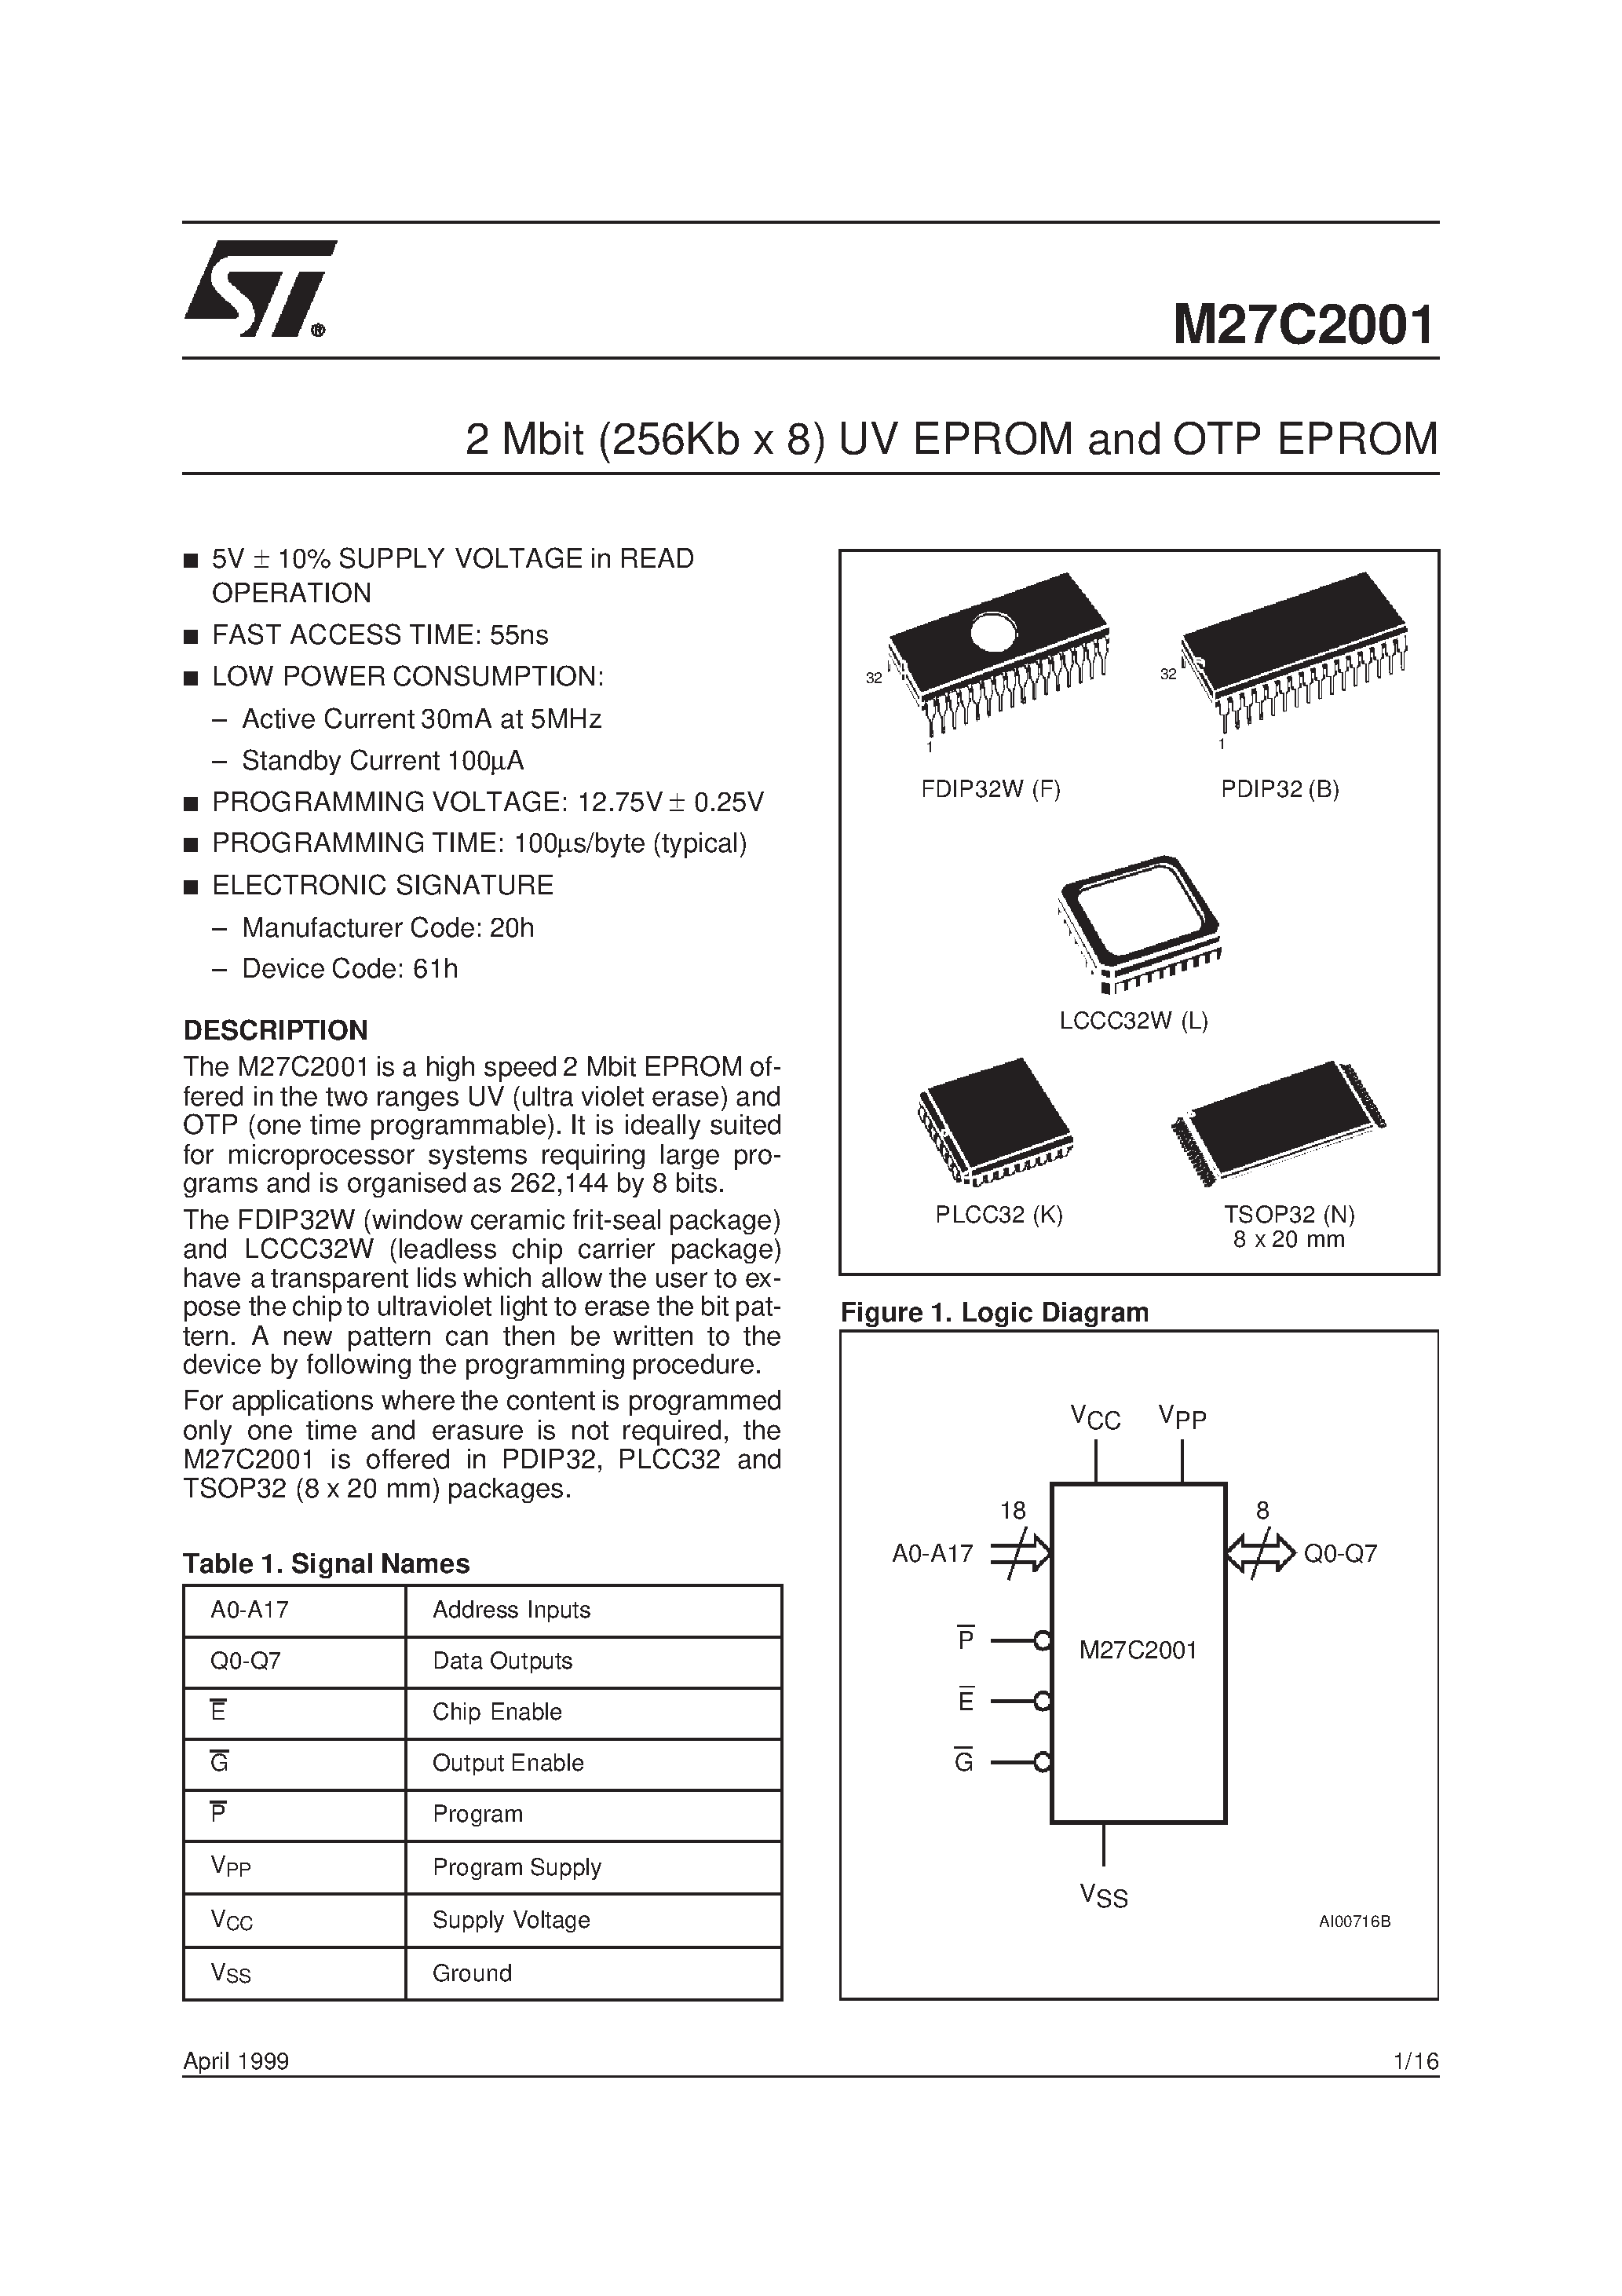 Datasheet M27C2001-10F1X - 2 Mbit 256Kb x 8 UV EPROM and OTP EPROM page 1